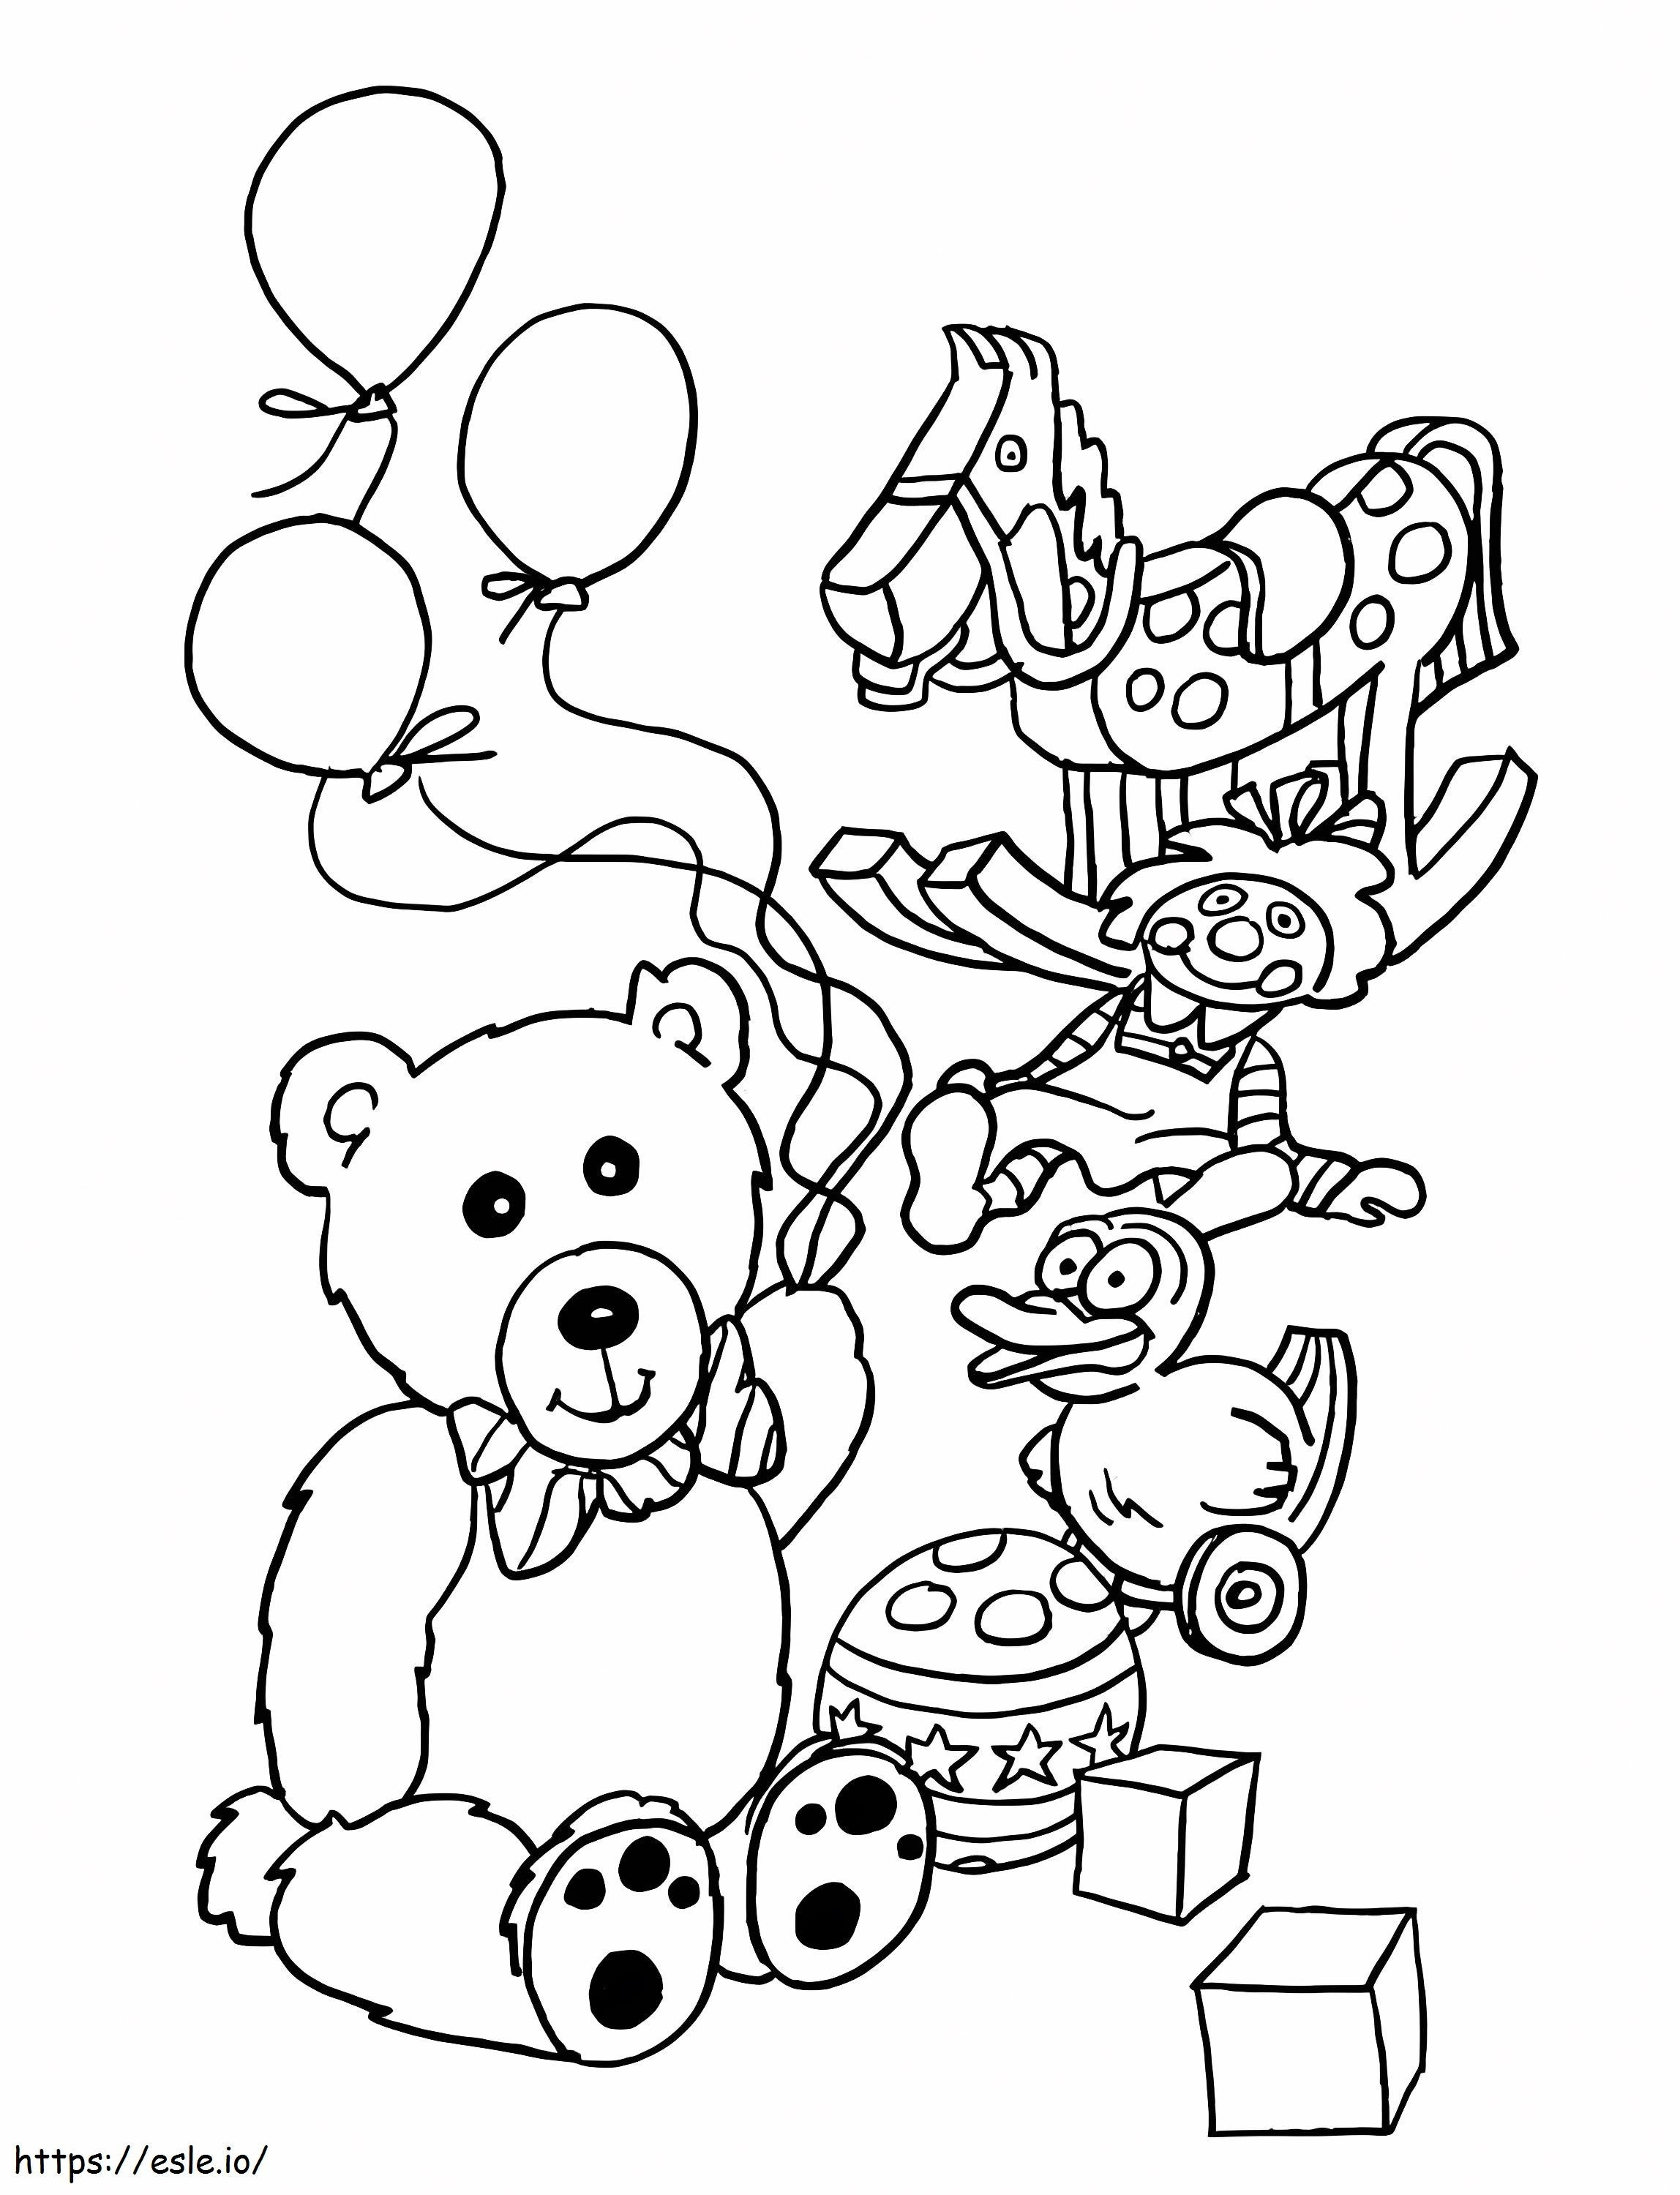 oso de peluche y juguetes para colorear